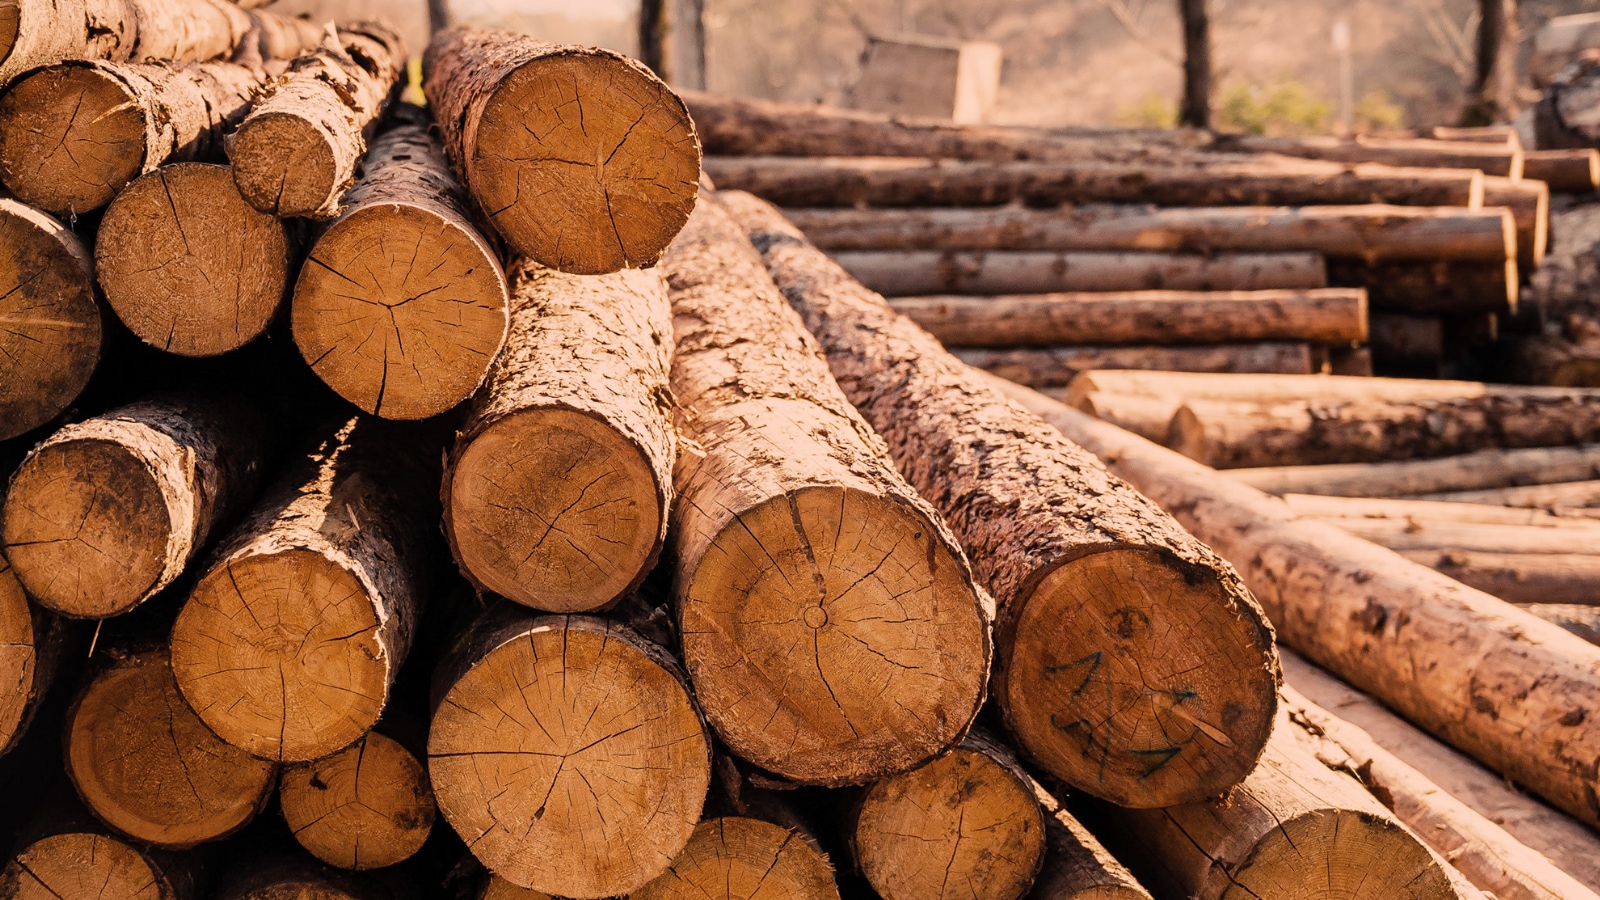 持続可能な森林管理を行なった木材を使用することもサステナブルな選択と言える